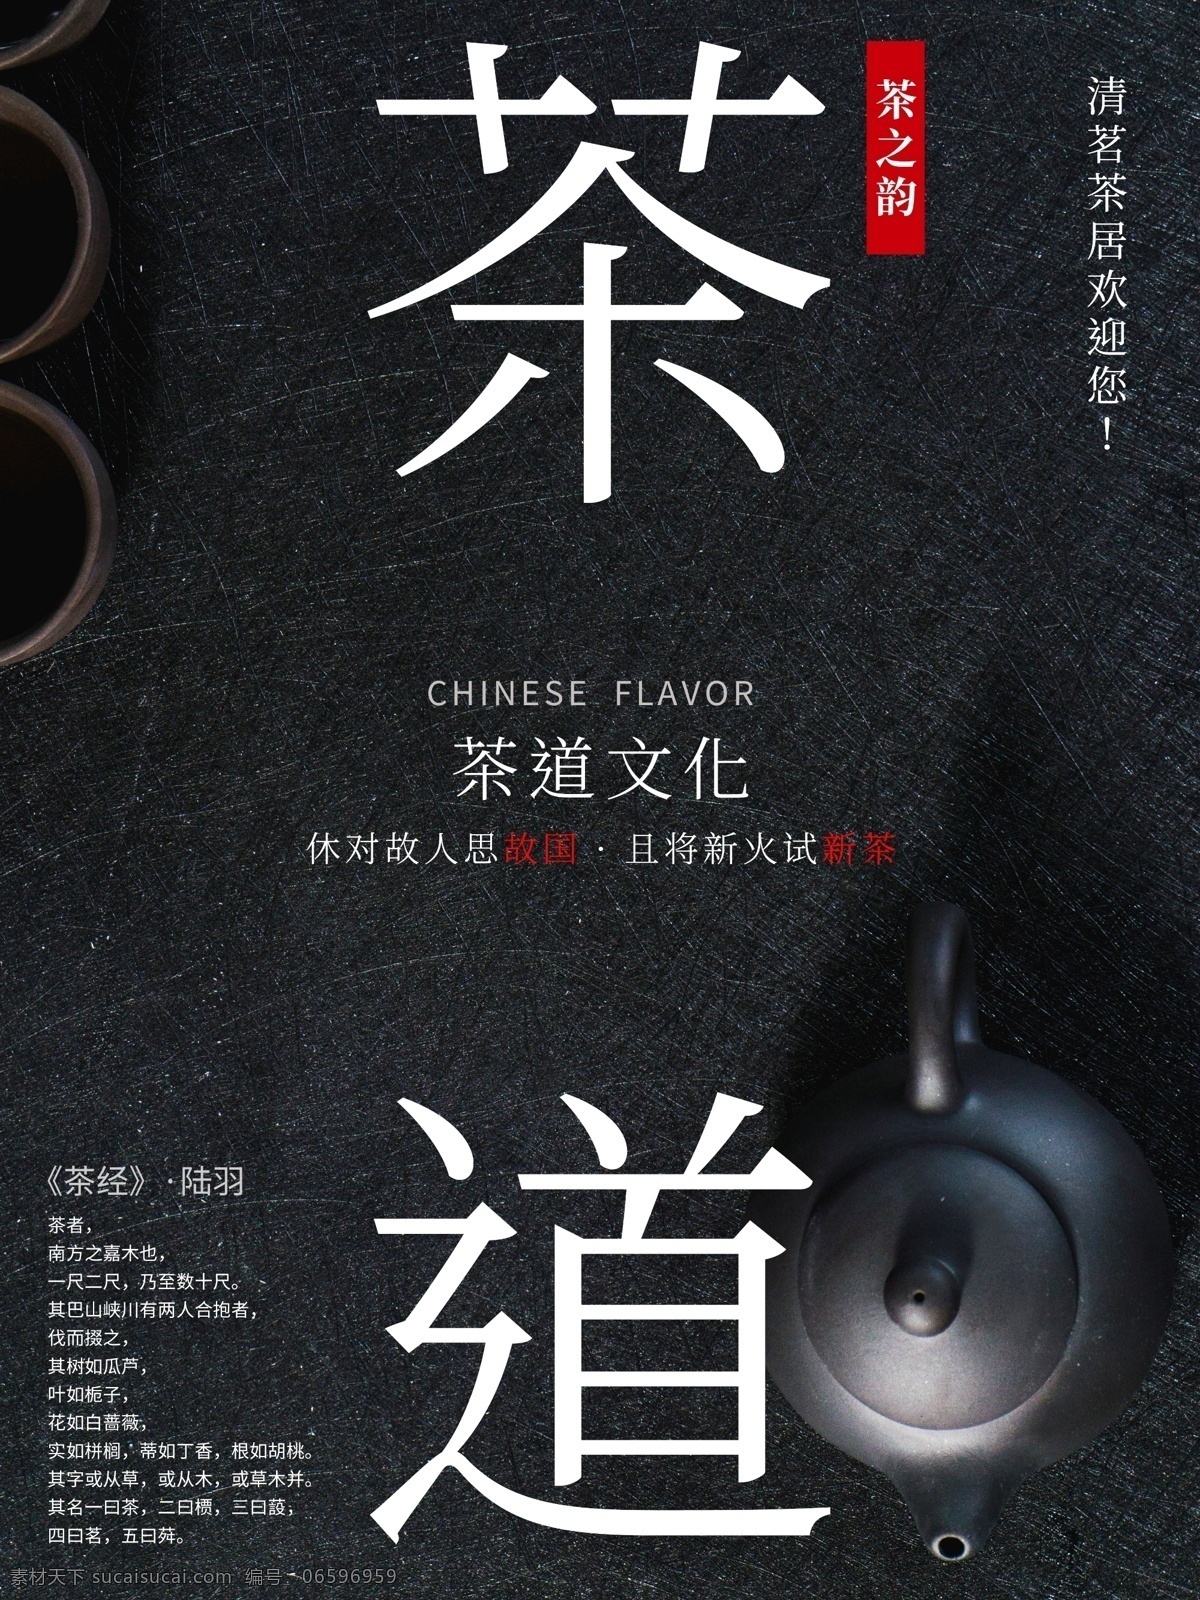 原创 茶道 文化 茶楼 展示 海报 黑色 磨砂质感 茶具 日式风格 简约